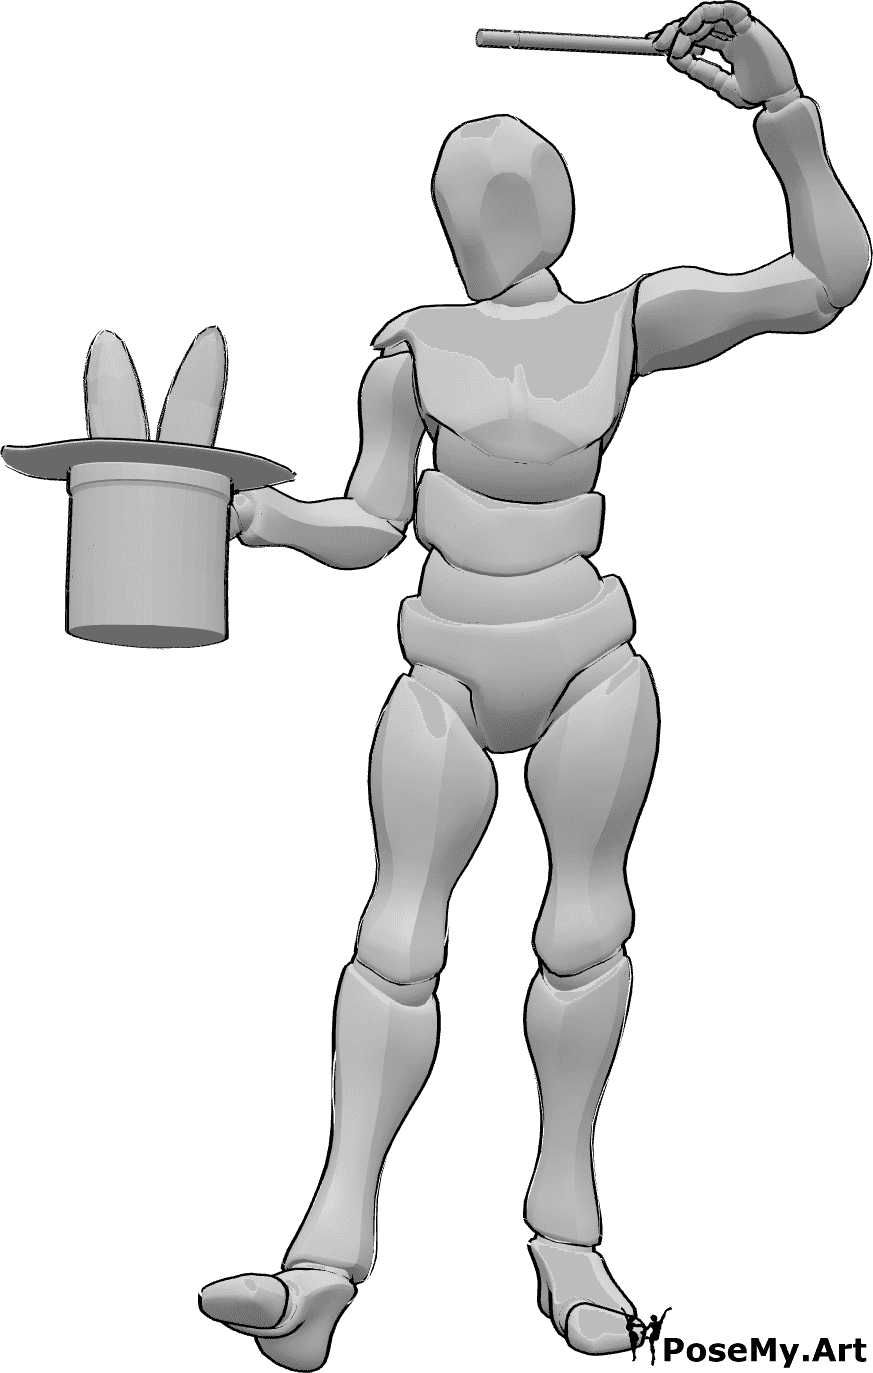 Referencia de poses- Postura de conejo conjurador - Un mago hace magia y saca un conejo de su chistera con su varita.